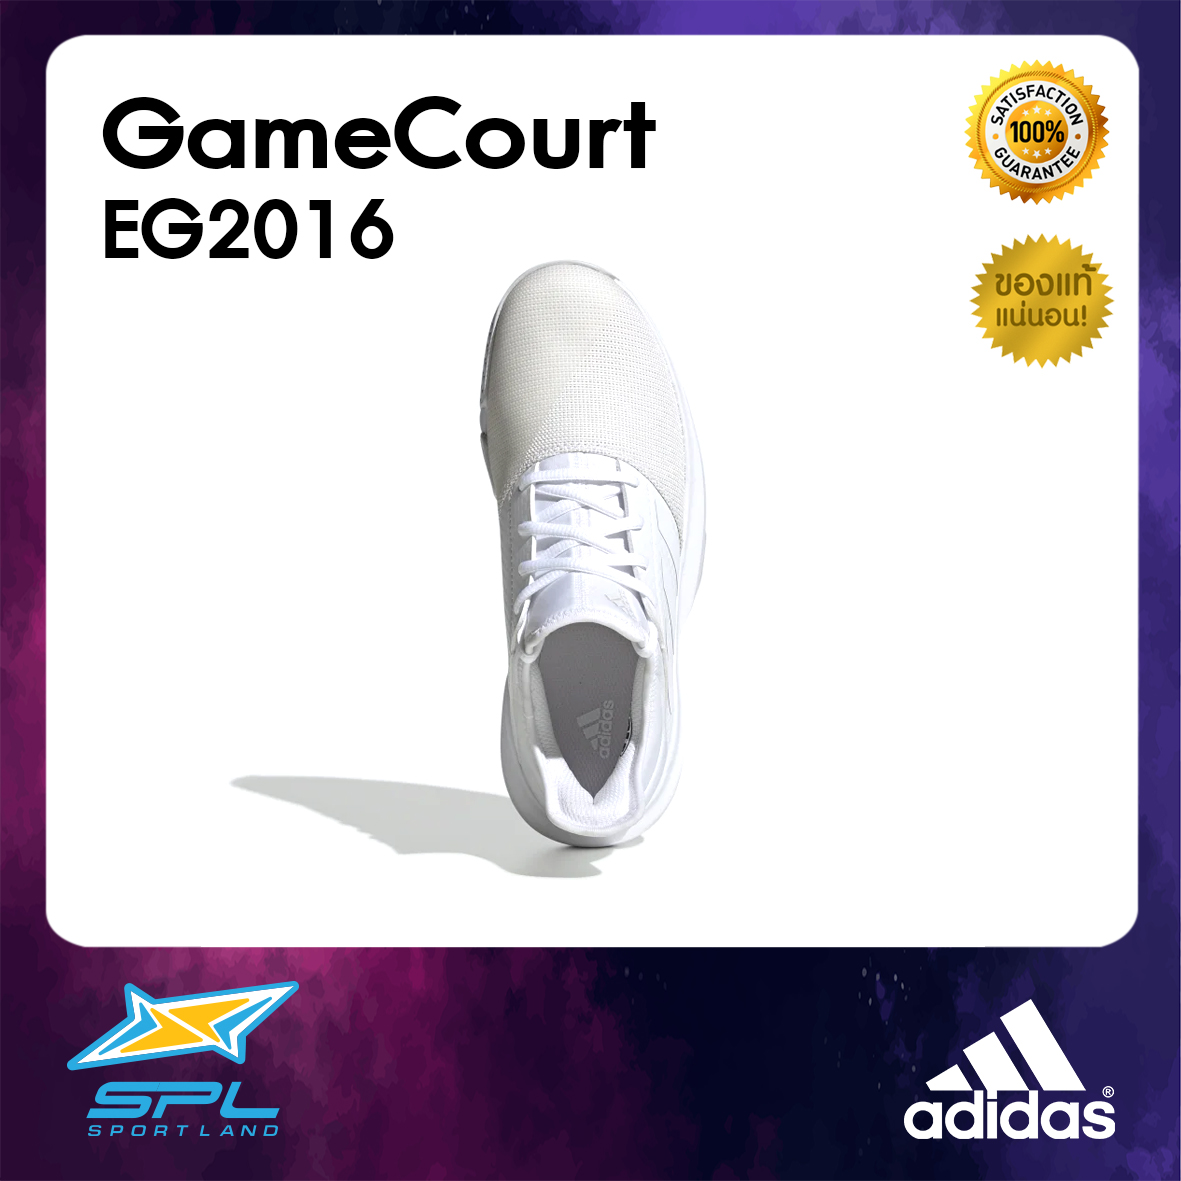 Adidas รองเท้าเทนนิส อาดิดาส รองเท้ากีฬา ผู้หญิง Tennis Women Shoe GameCourt EG2016 (2300)